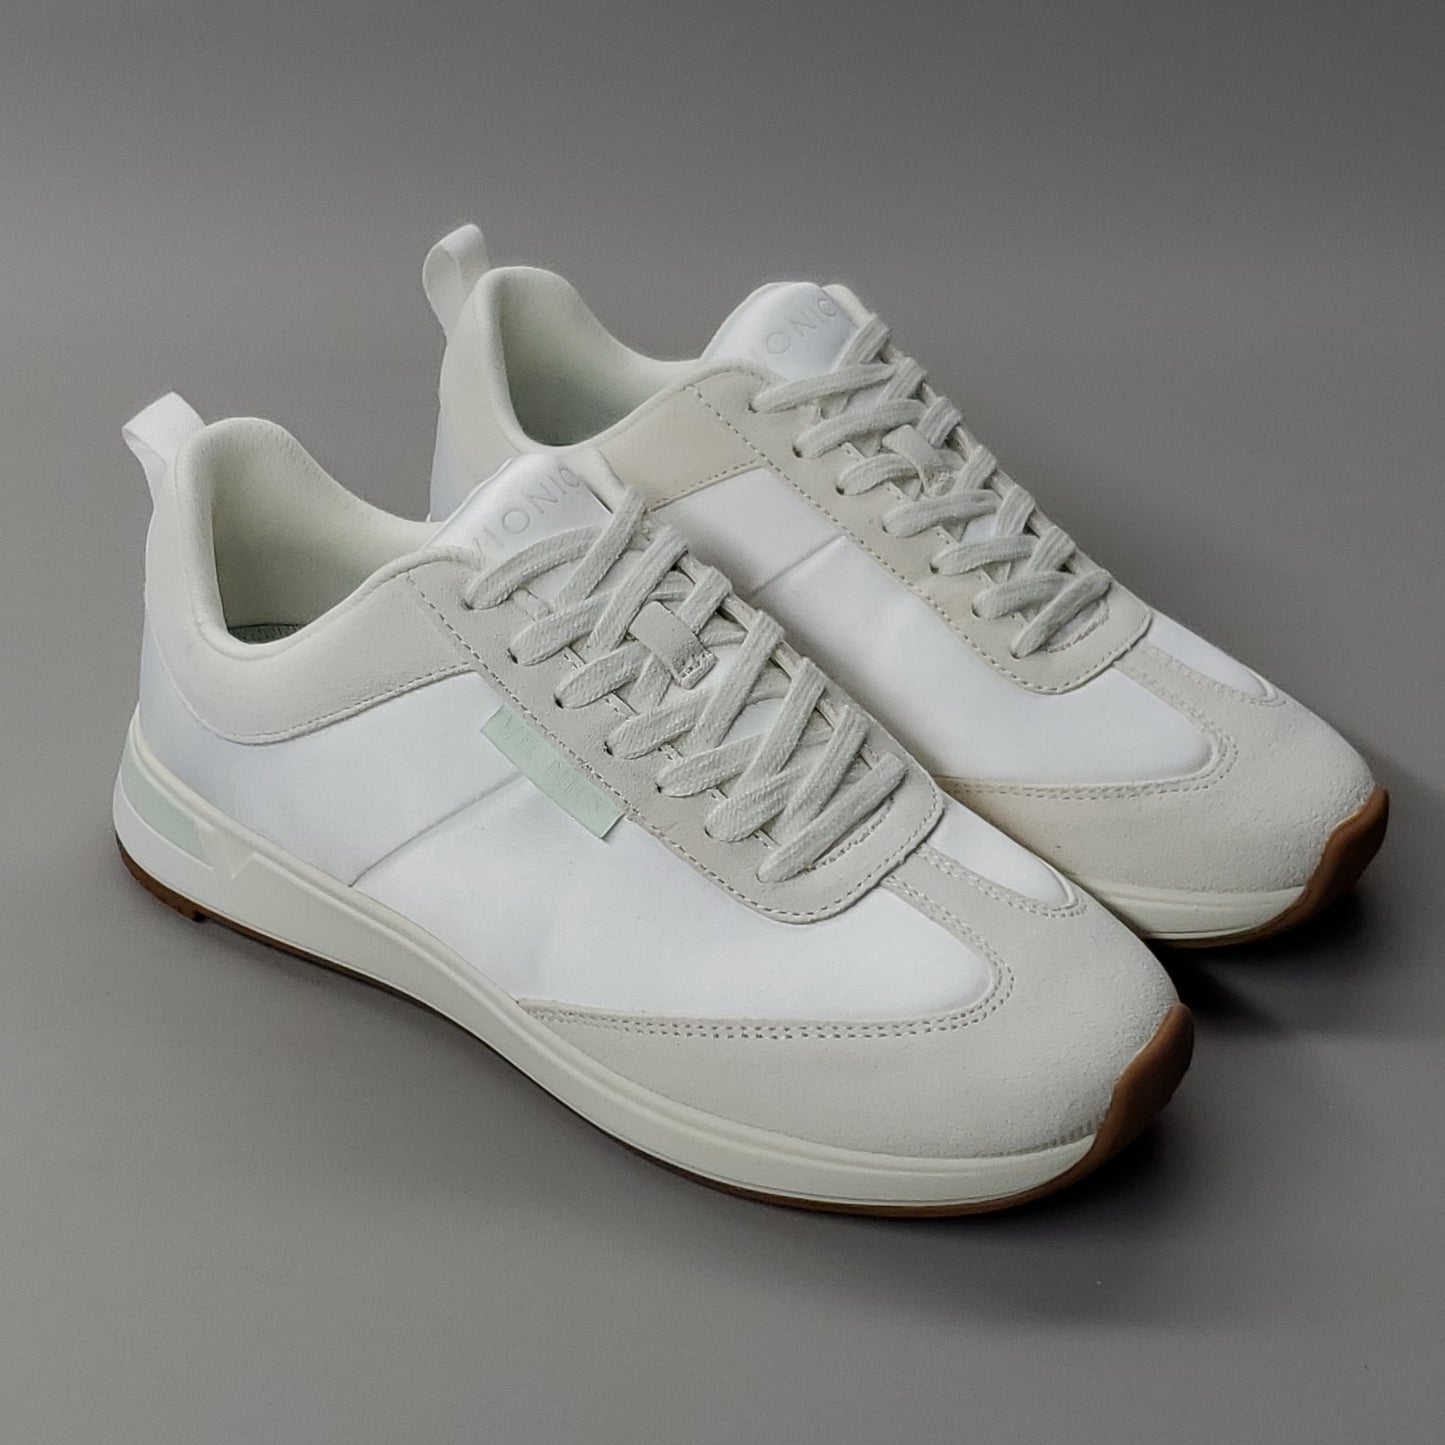 VIONIC Breilyn Satin Sneaker Shoe Women's Sz 6.5 M Beige/White (New)